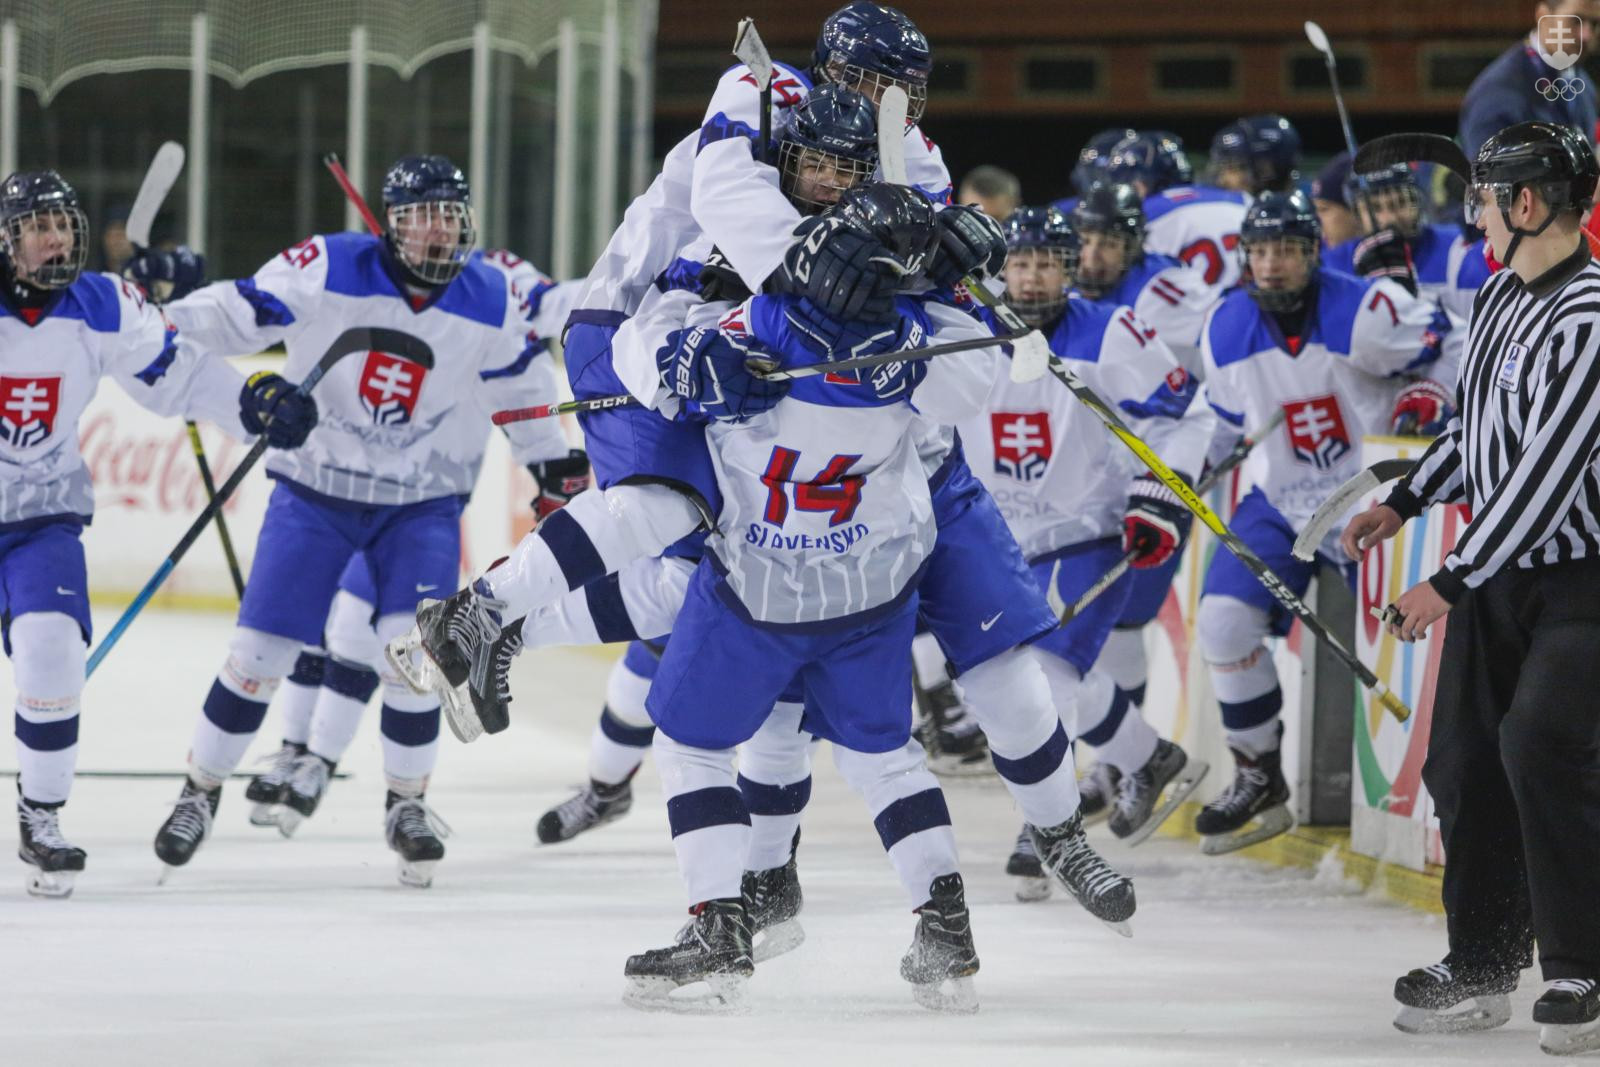 Naši mladí hokejisti rozhodli o svojom prvom víťazstve na turnaji až v predĺžení. FOTO: : SOŠV/Andrej Galica